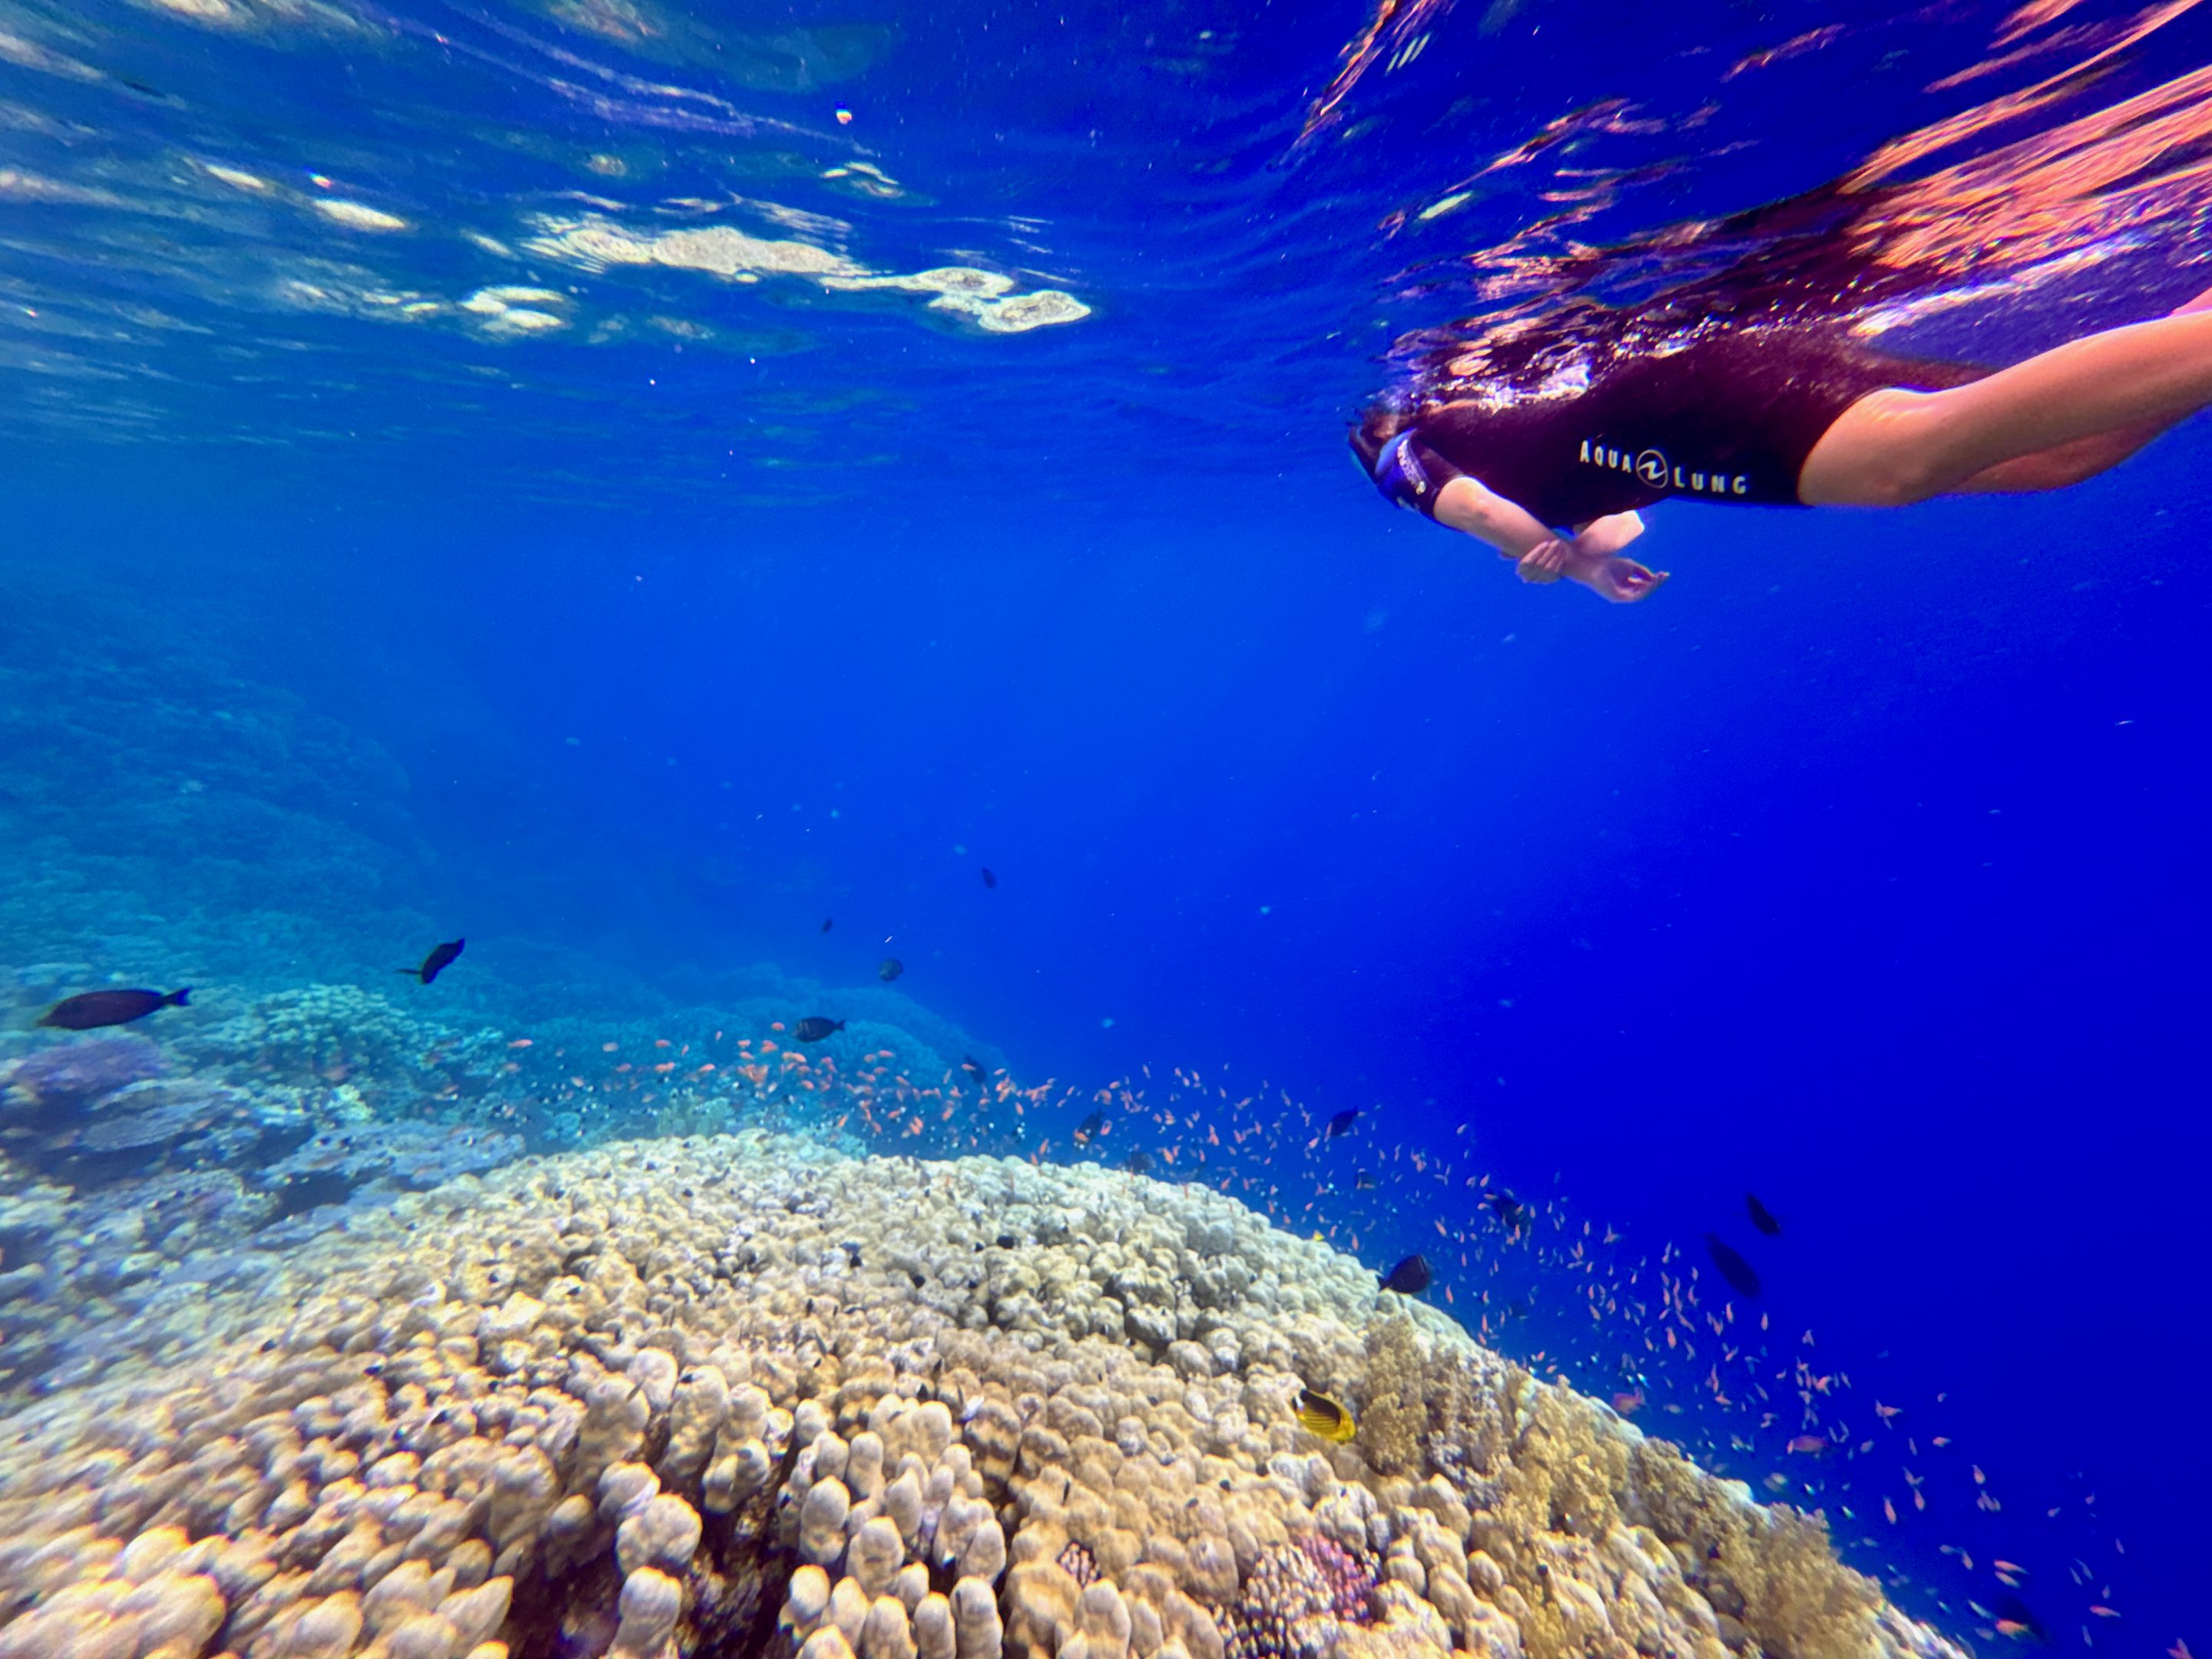 En snorkeling vous pourrez découvrir le récif d'Abu Dabbab. Photo de : Hilton Marsa Alam Nubian Resort Experiences